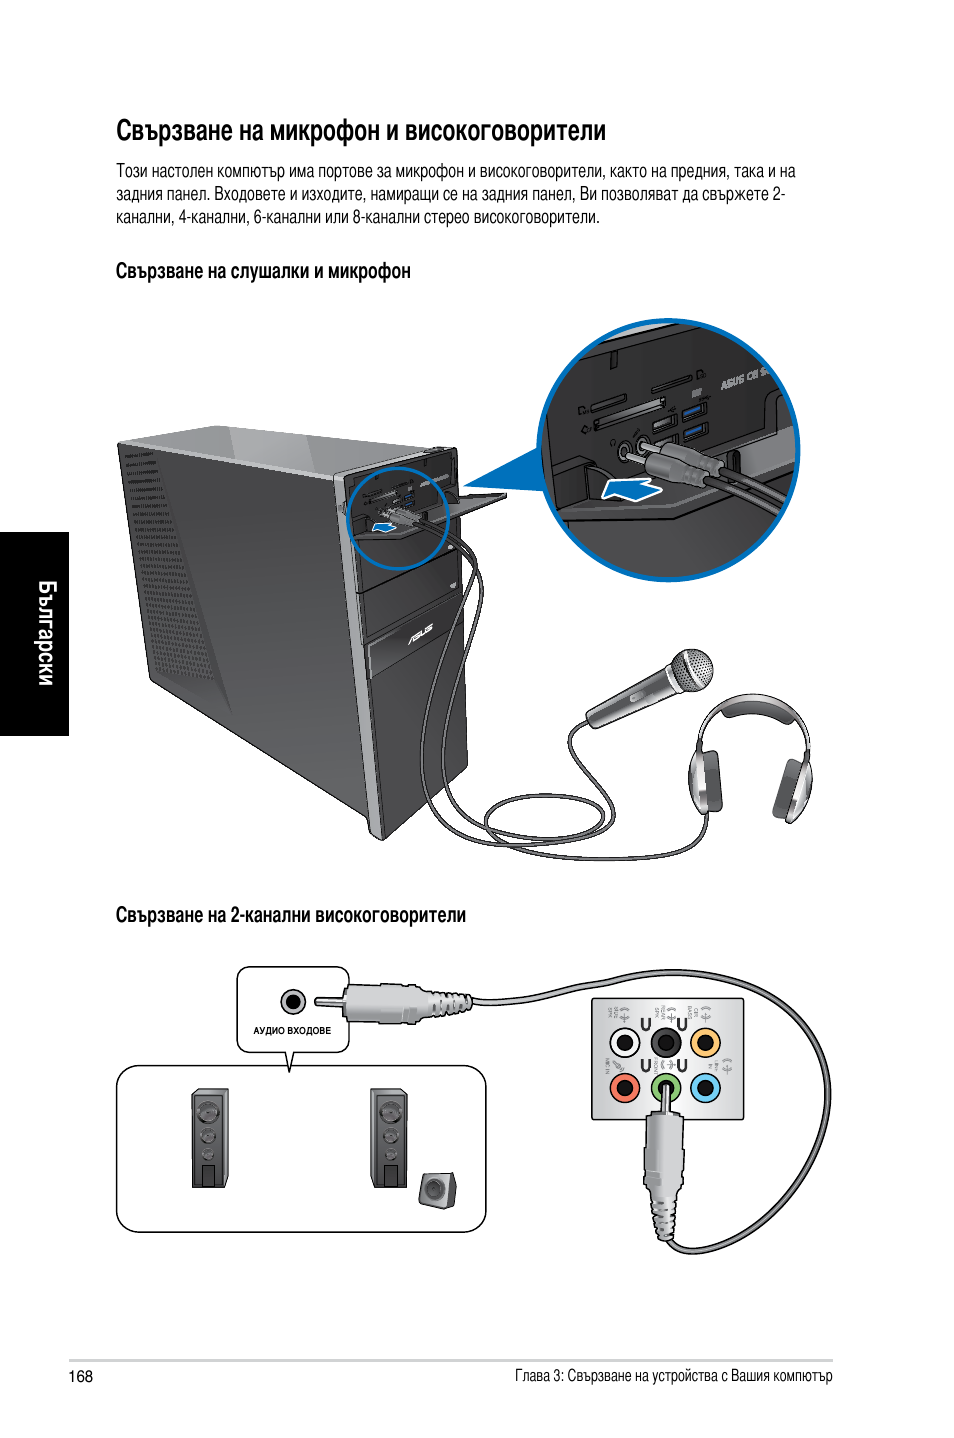 Свързване на микрофон и високоговорители, Български | Asus CG8265 User  Manual | Page 168 / 210